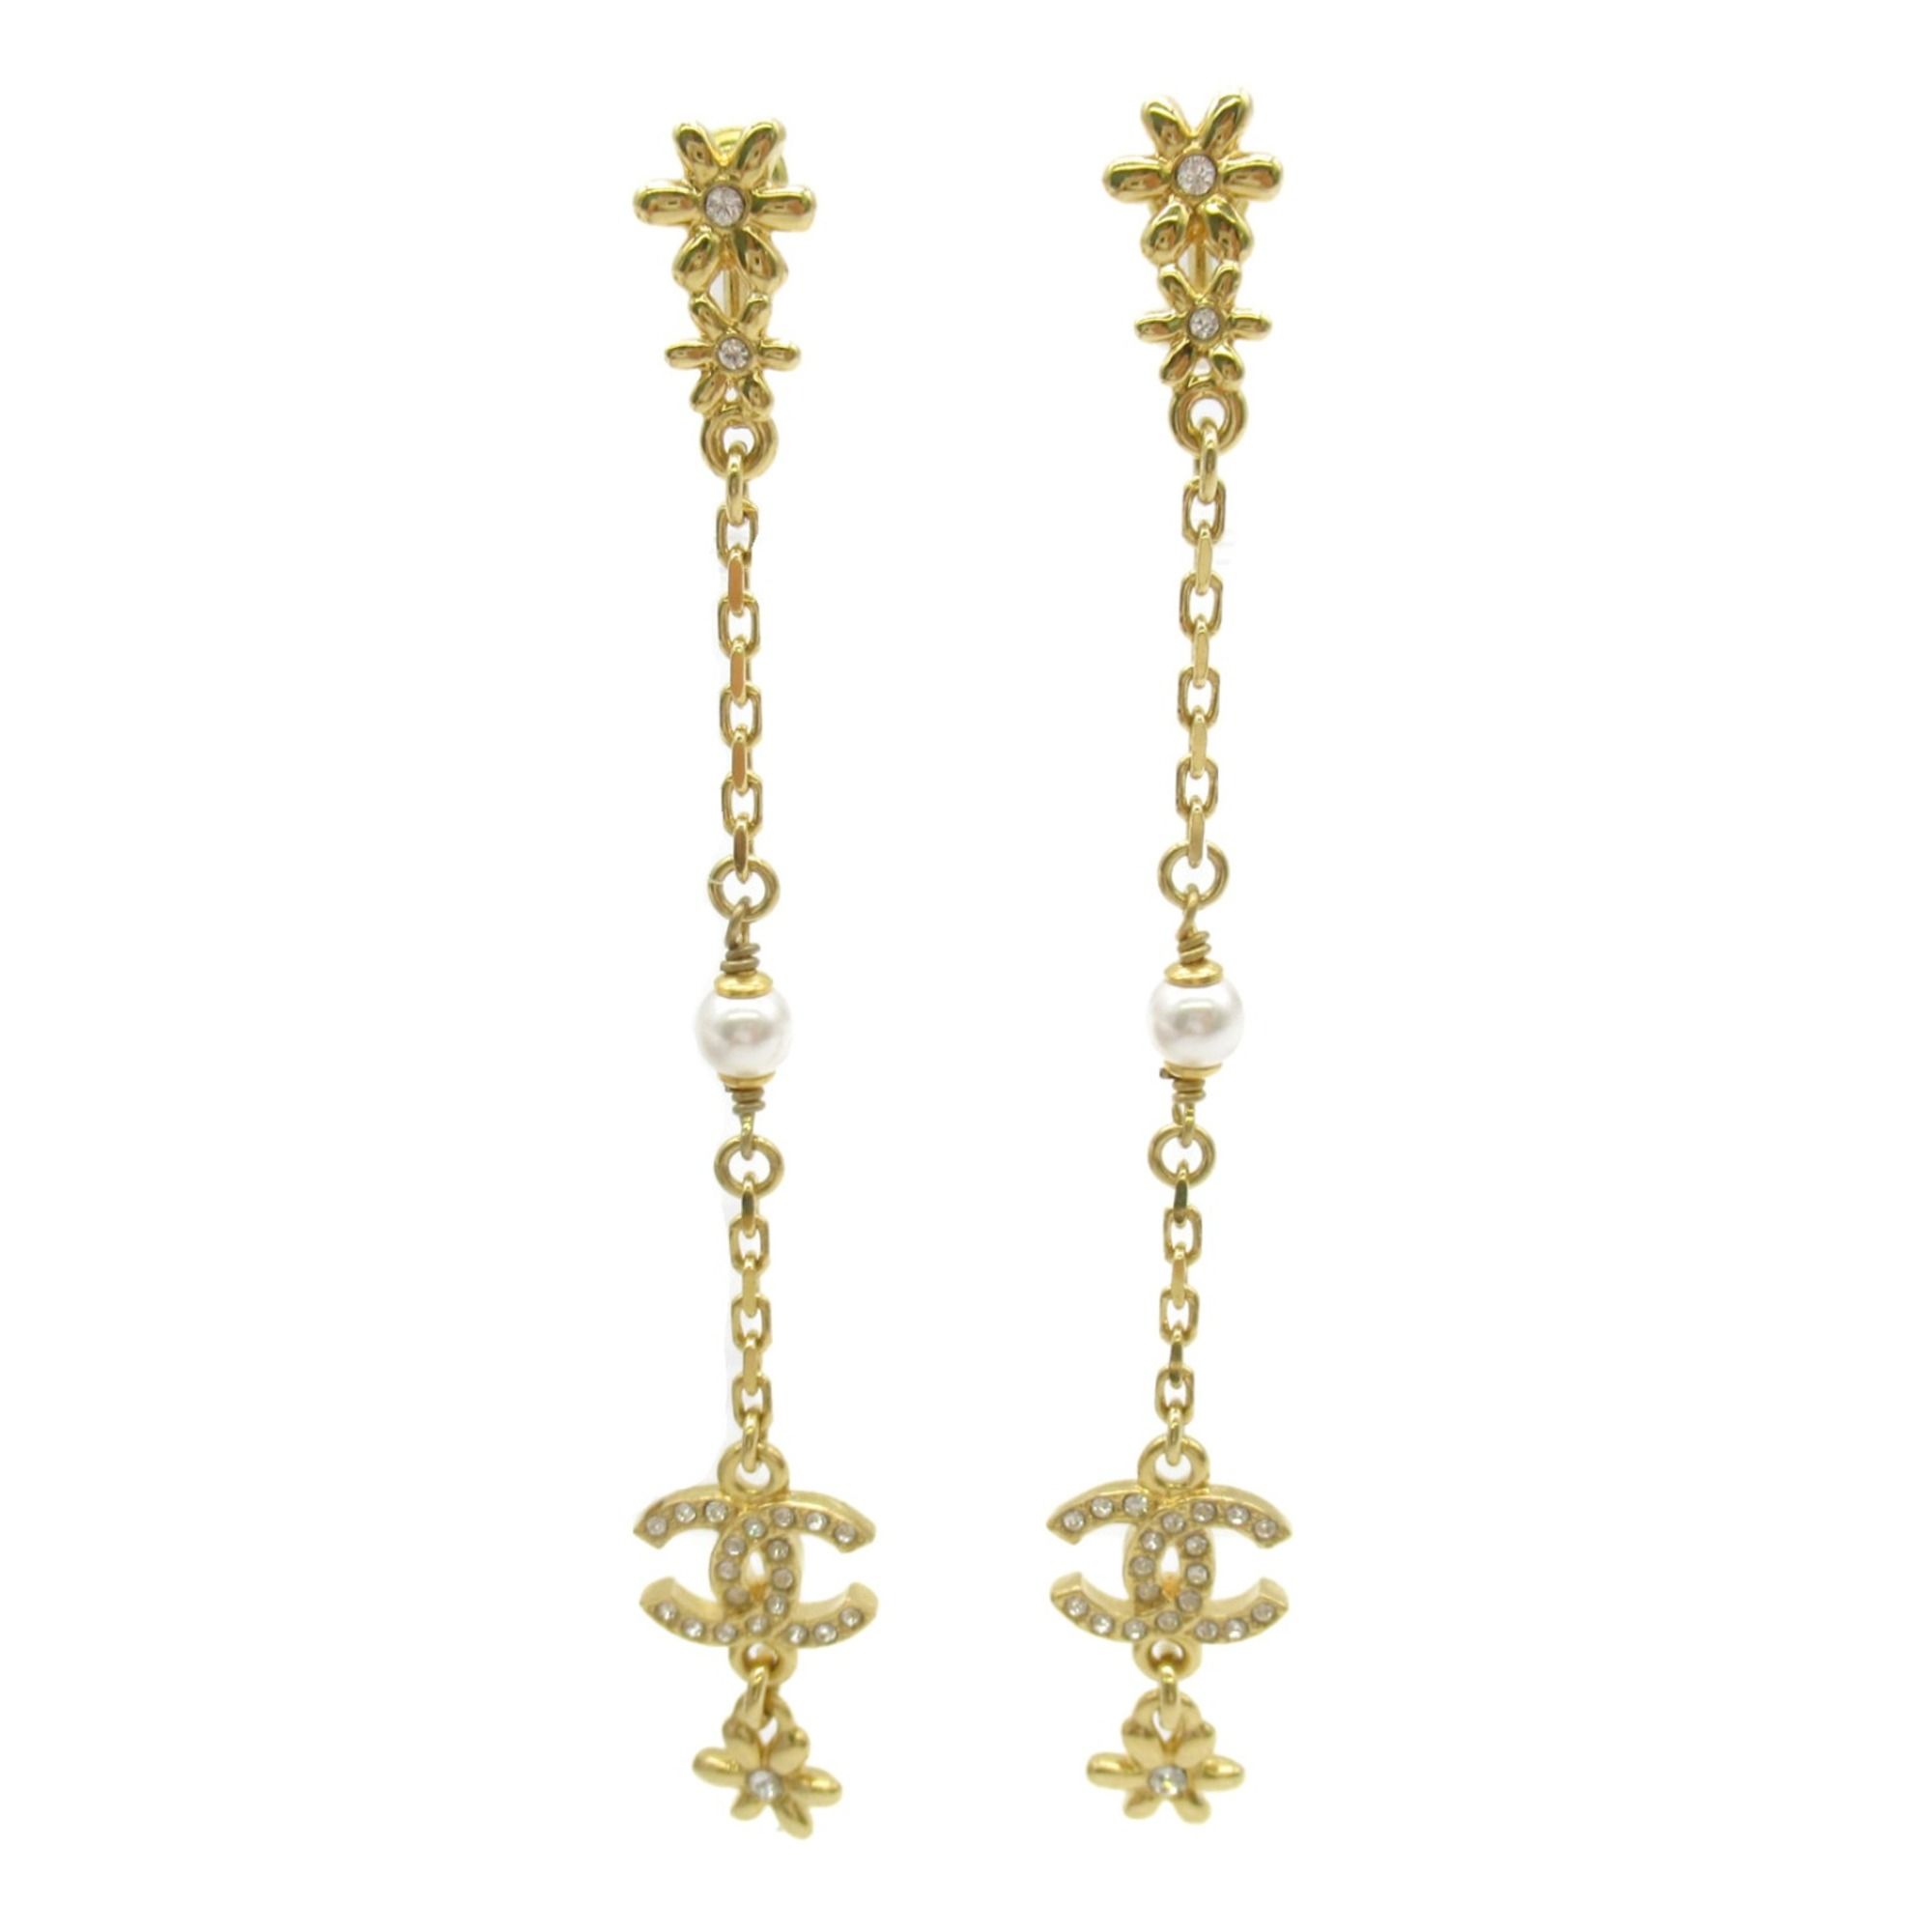 Chanel CHANEL Pierced earrings I23A Pierced earrings Gold Gold Plated Gold